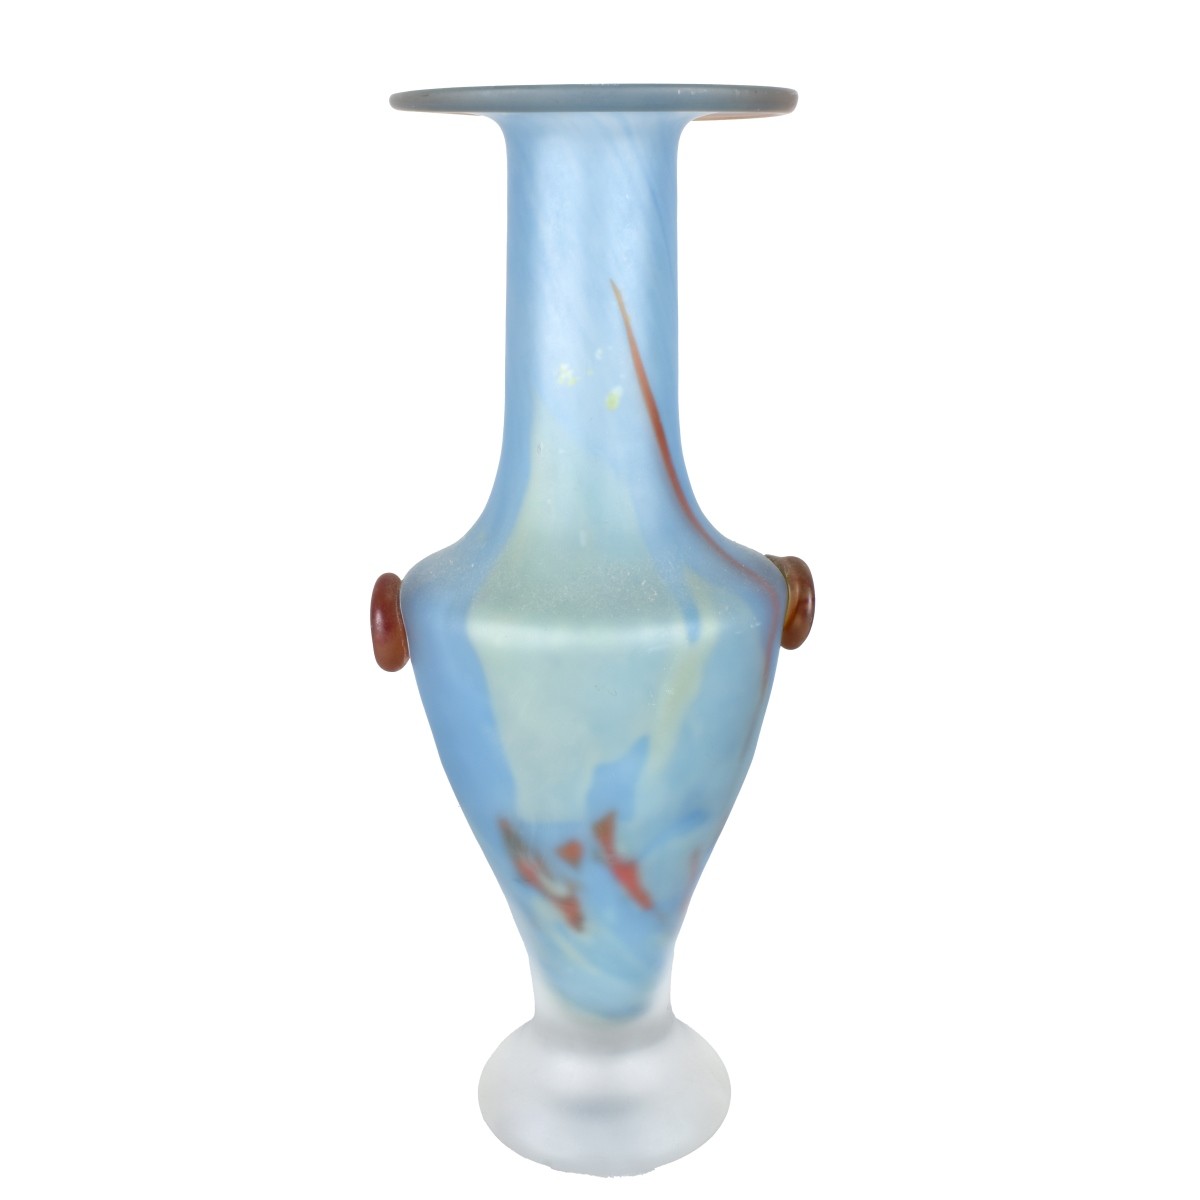 Kosta Boda "Pandora" Vase